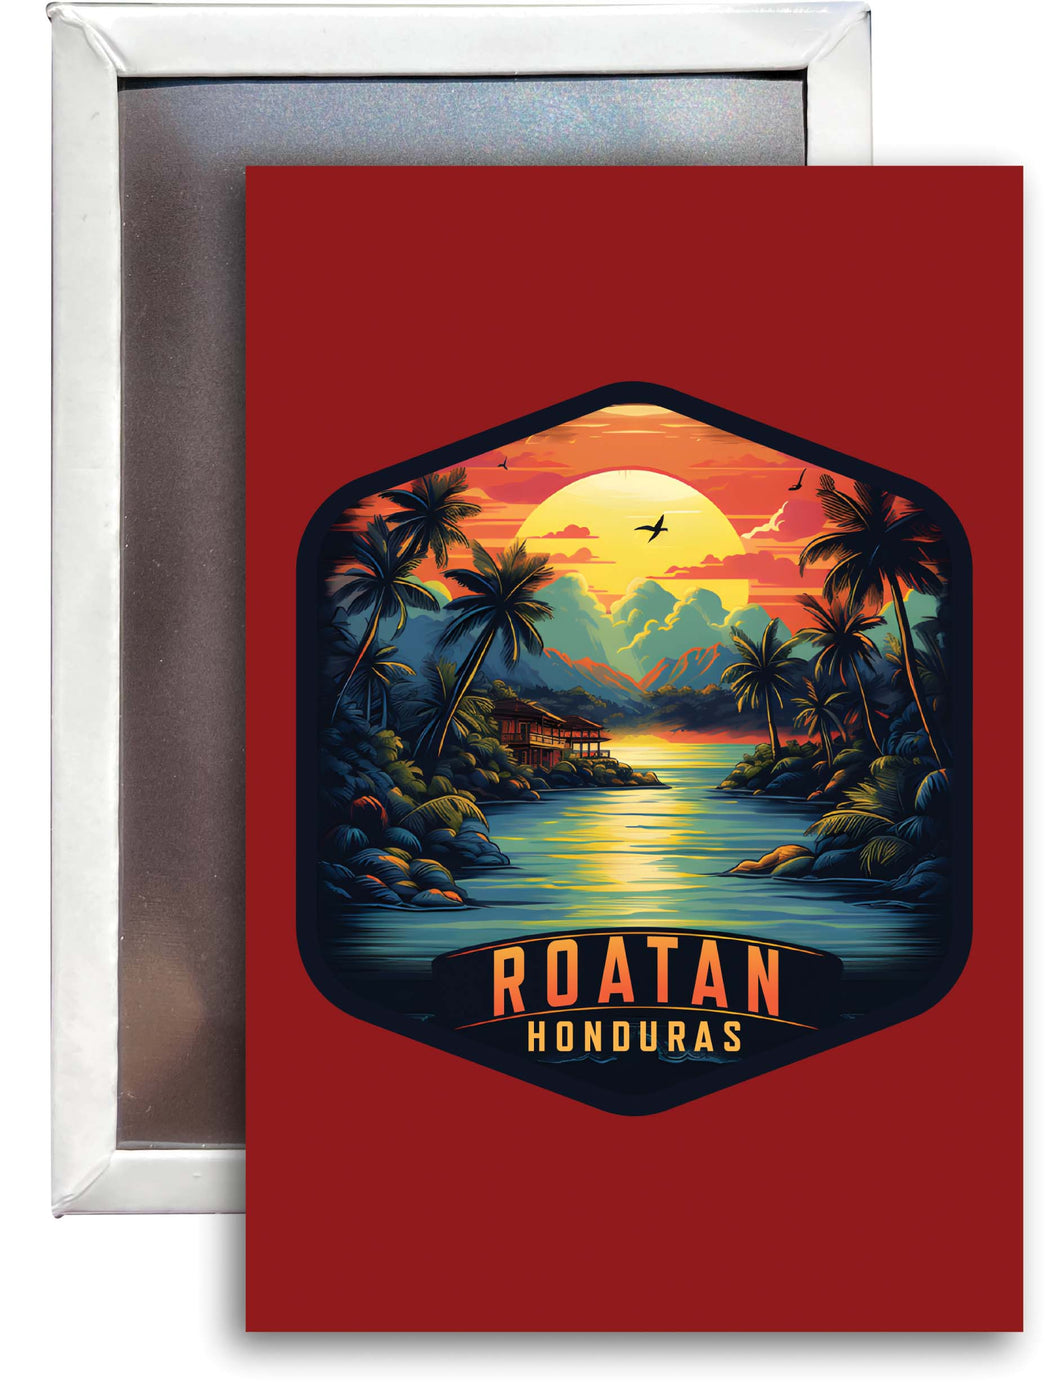 Roatan Honduras A Souvenir 2x3-Inch Durable & Vibrant Decor Fridge Magnet